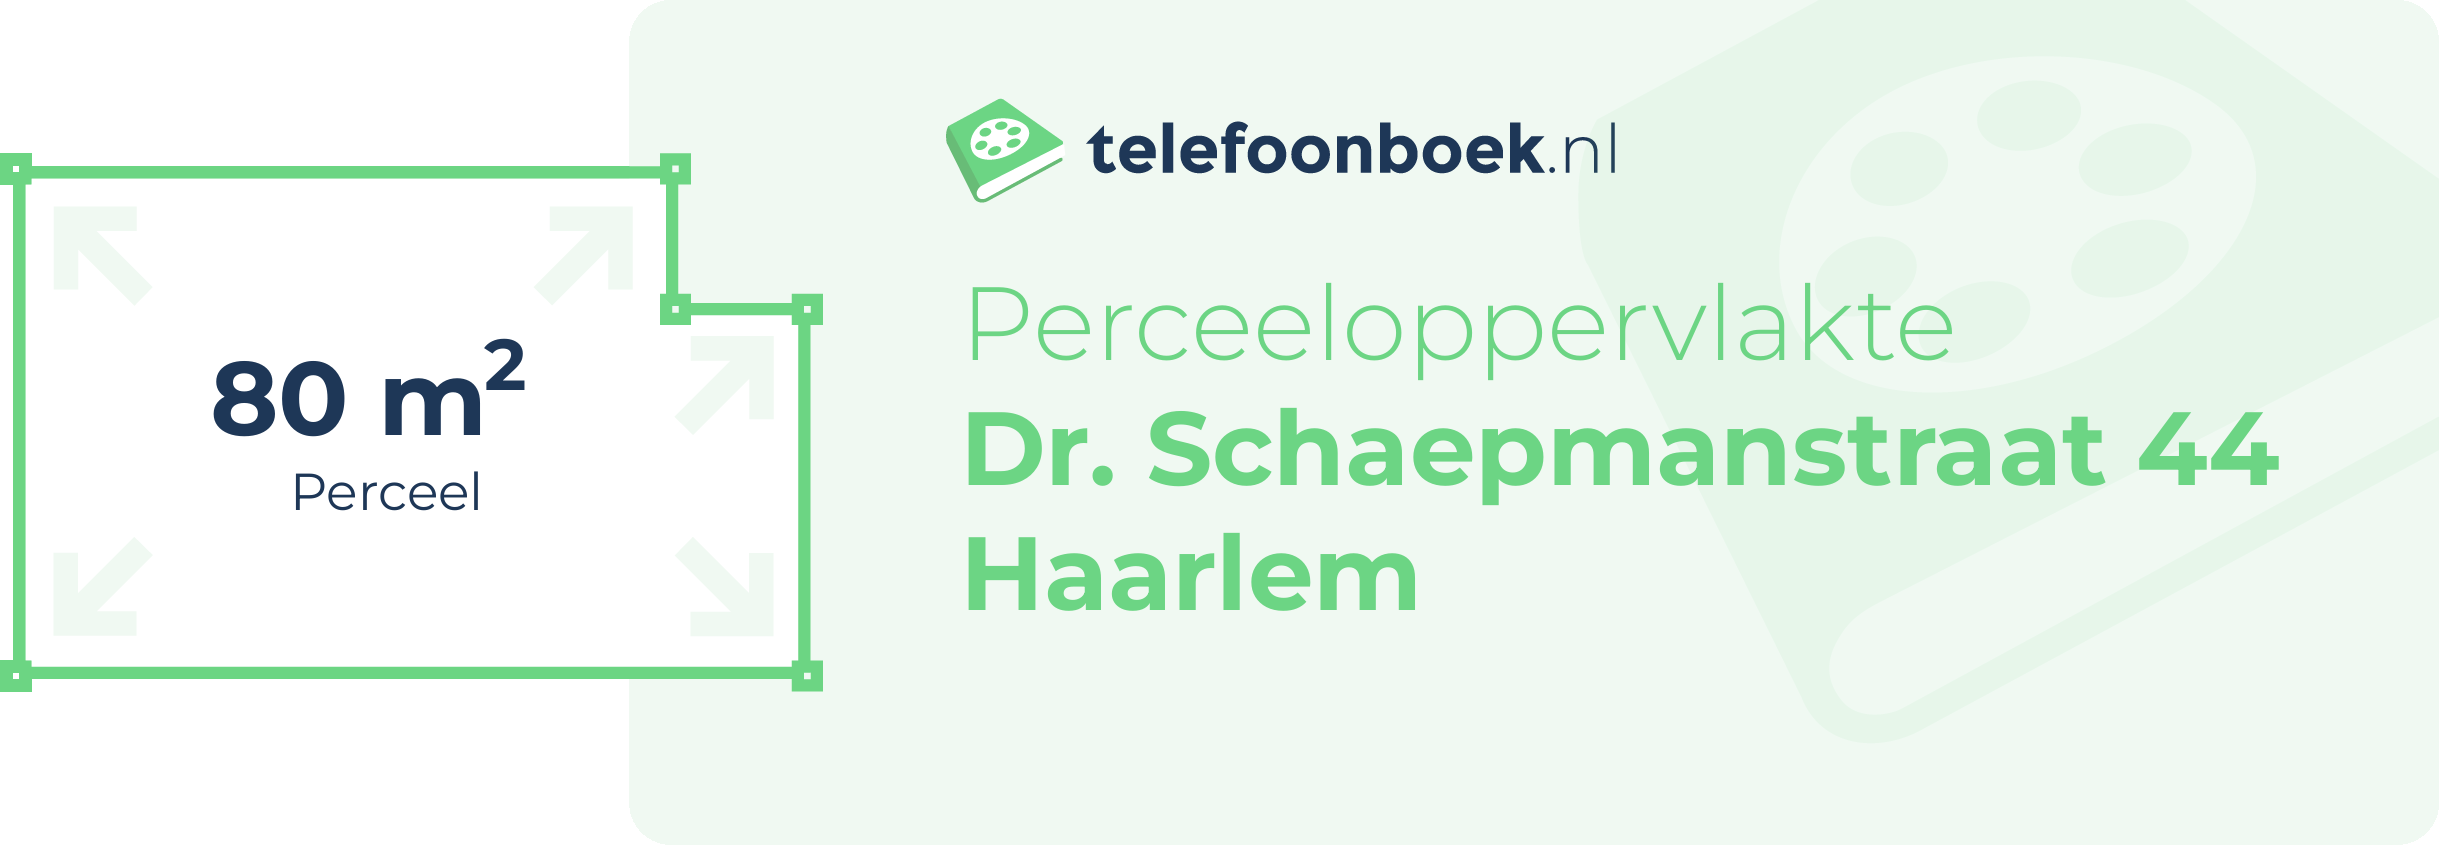 Perceeloppervlakte Dr. Schaepmanstraat 44 Haarlem